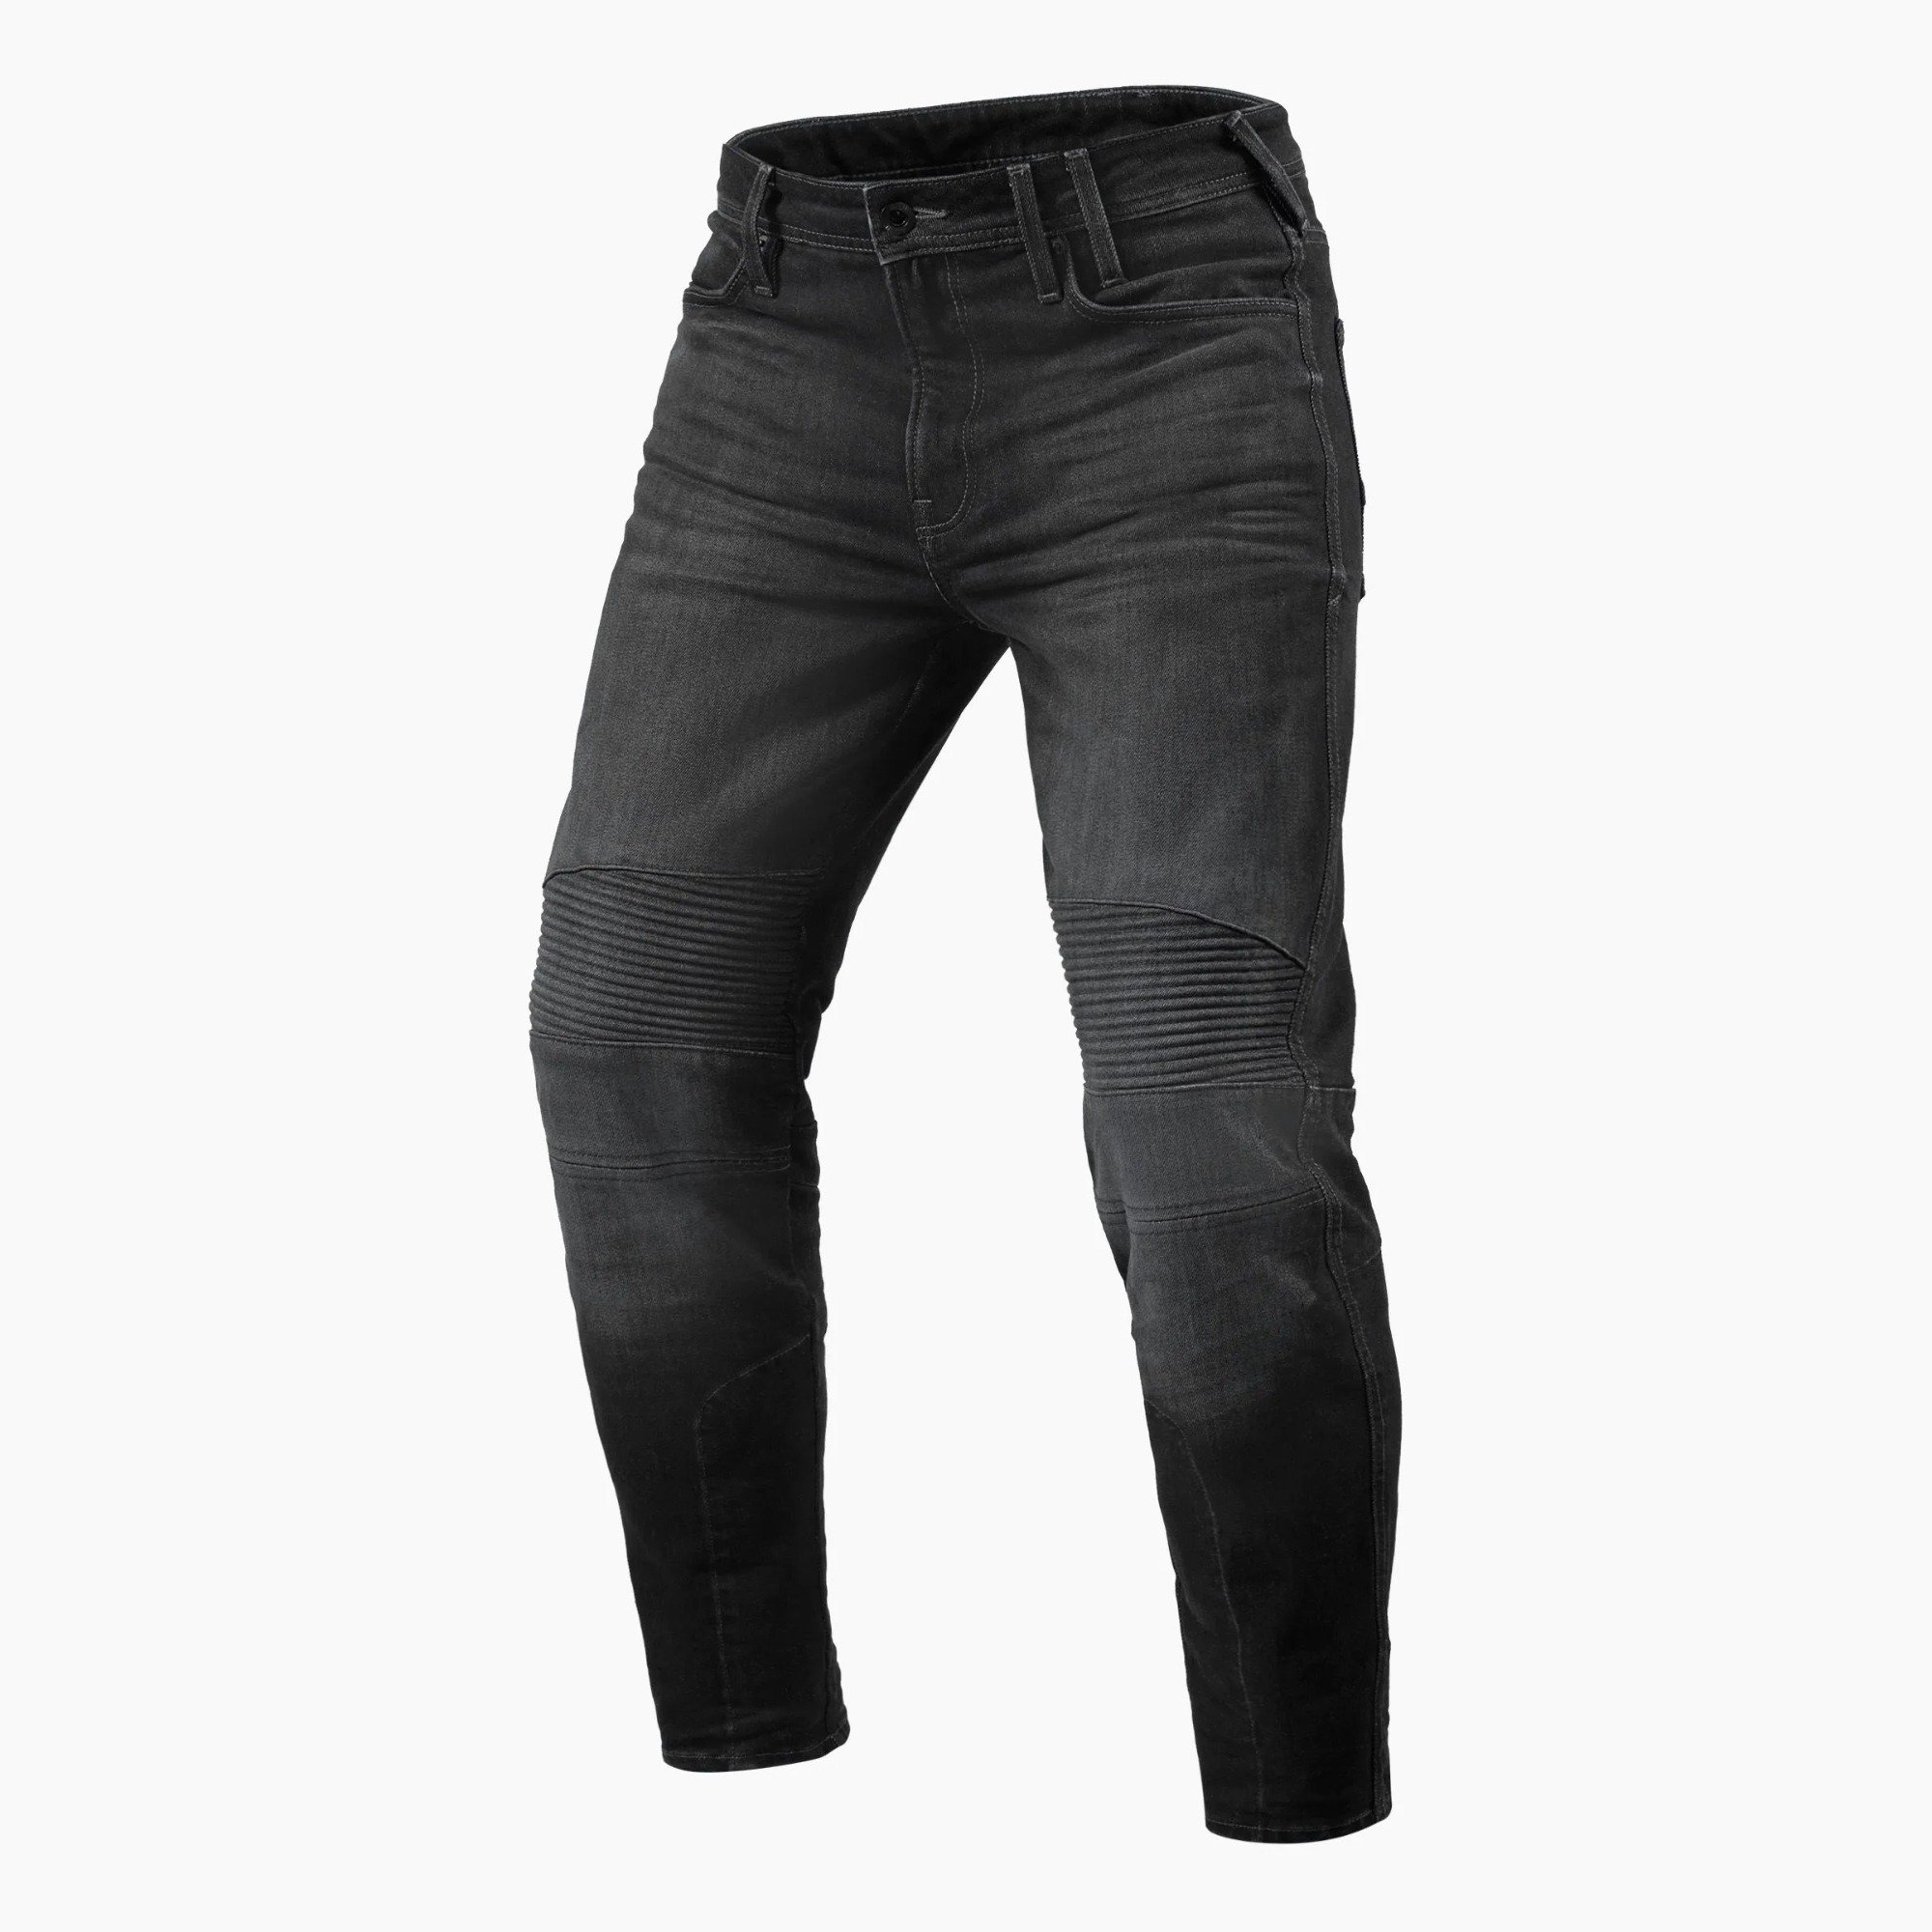 Image of REV'IT! Jeans Moto 2 TF Dark Grey Used Motorcycle Jeans Size L36/W32 EN